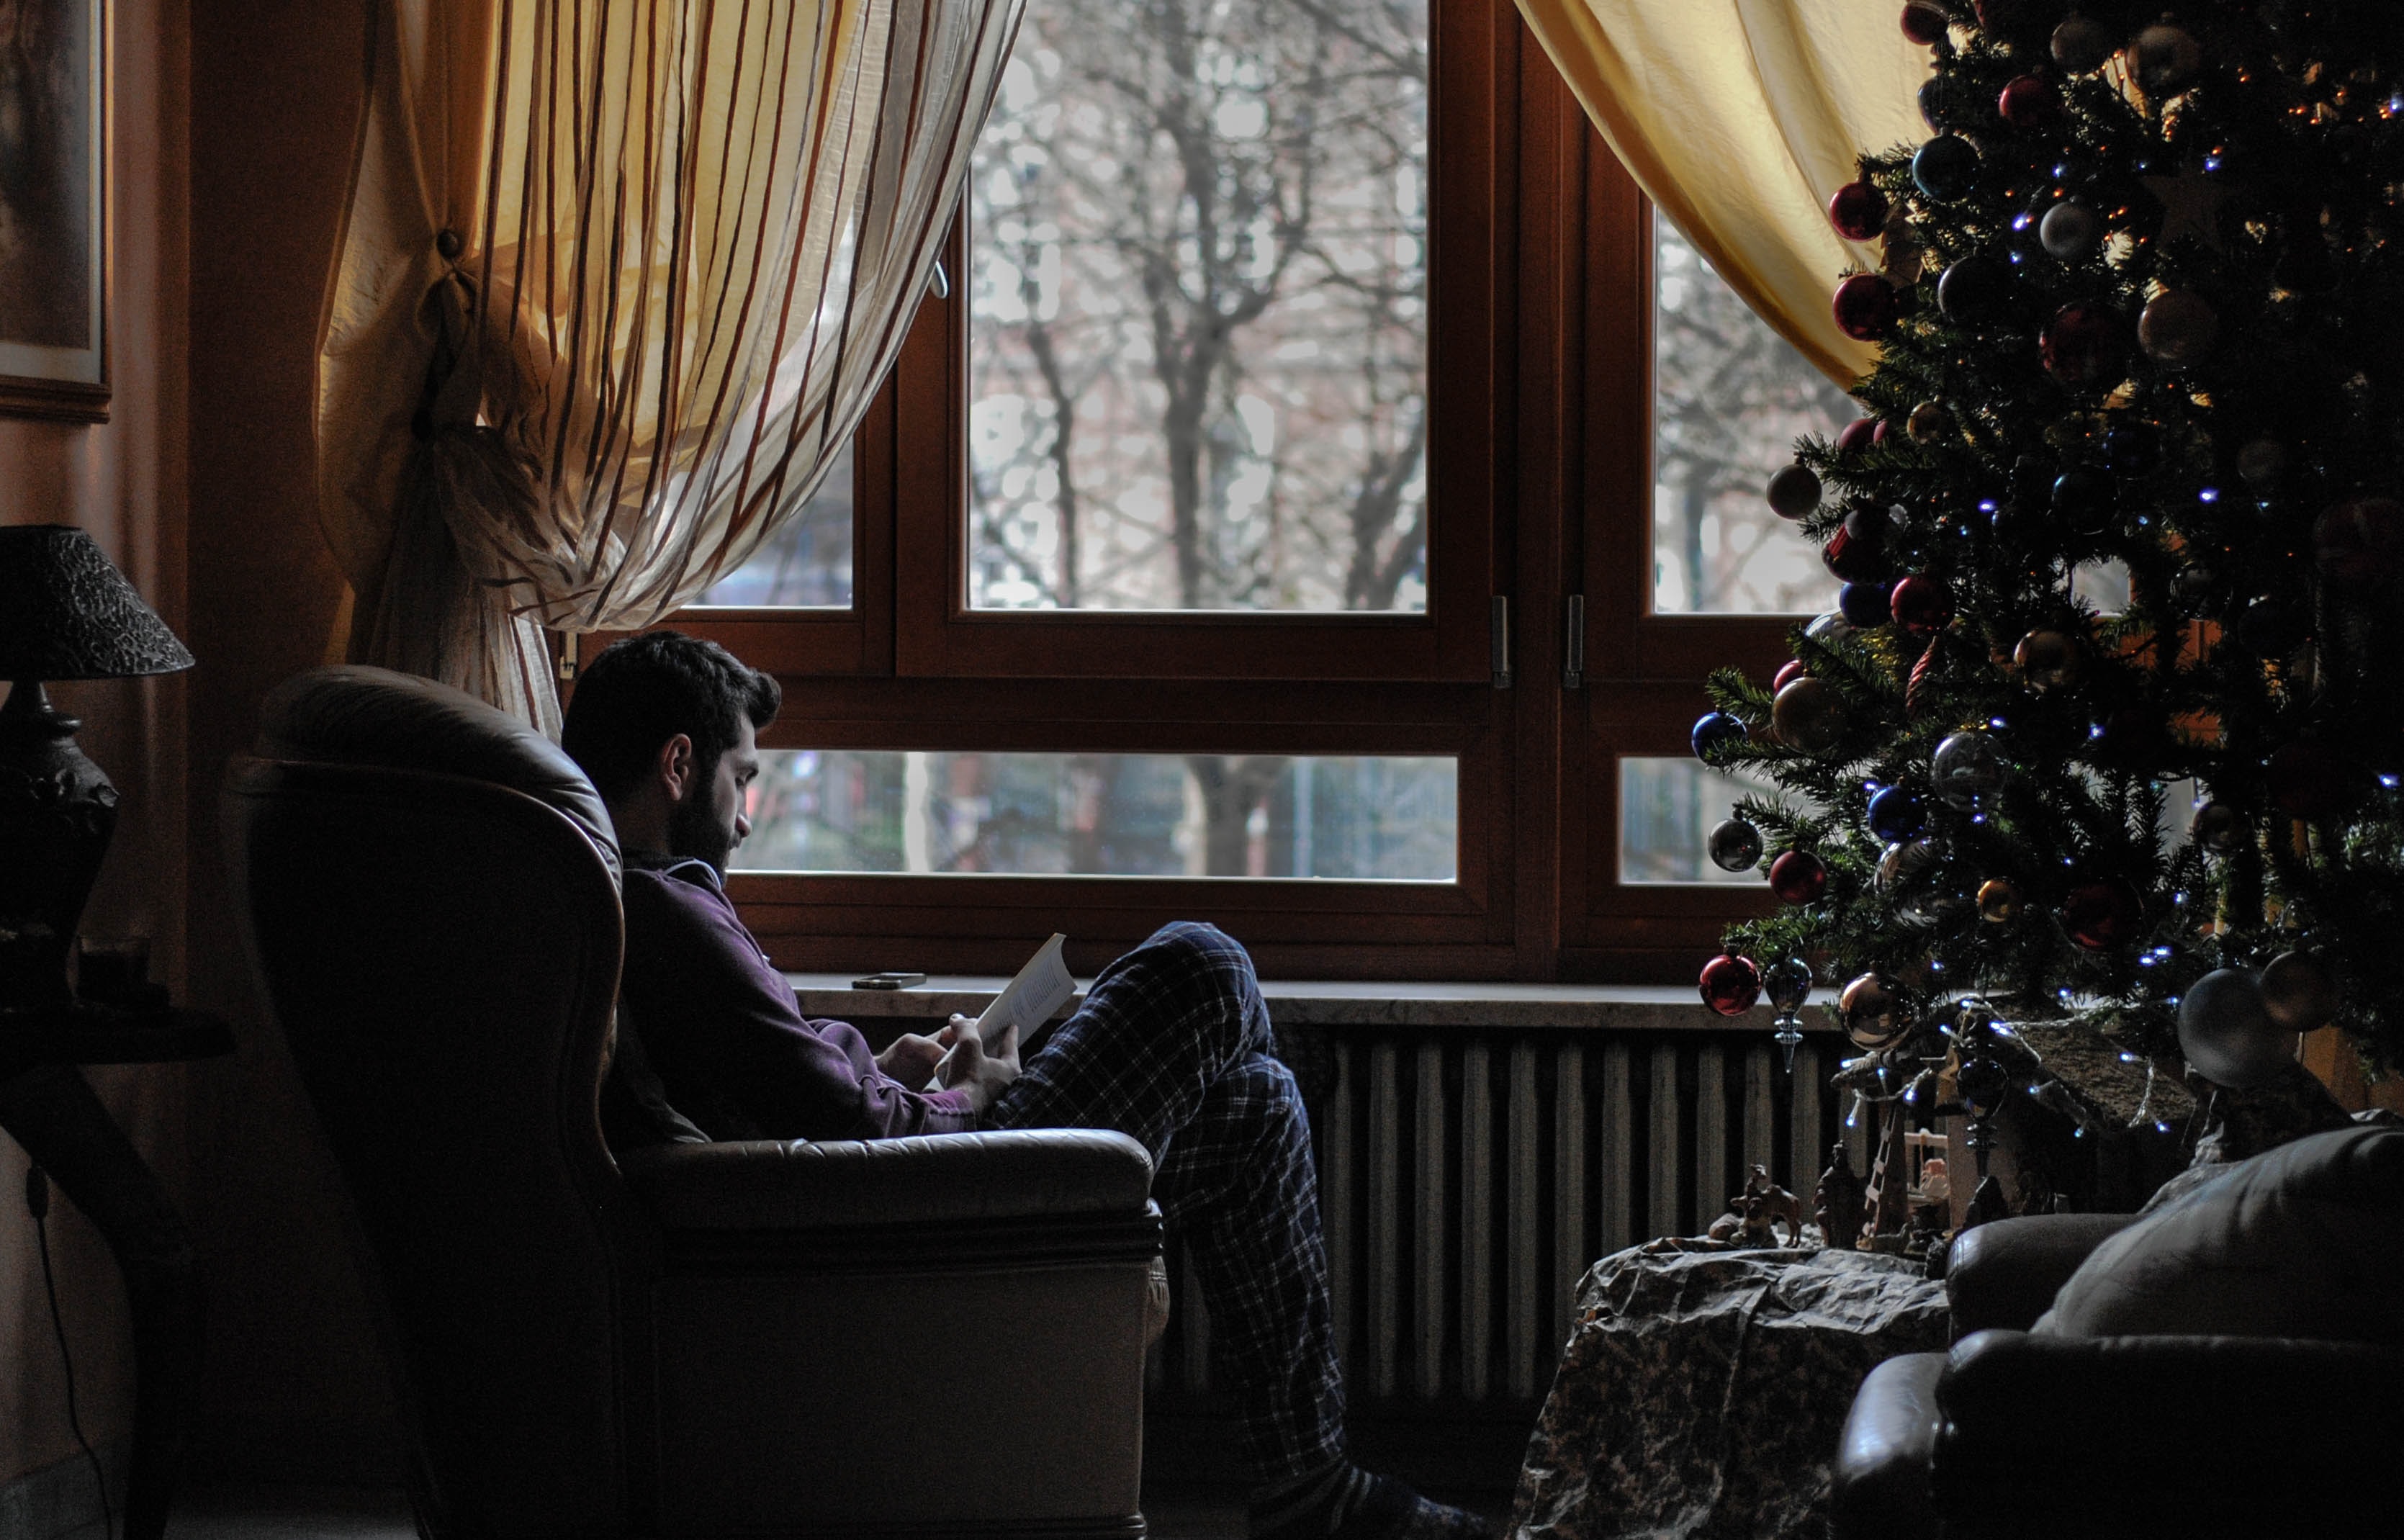 Święta inne niż zwykle. Ograniczenie spotkań rodzinnych może pogłębić stres